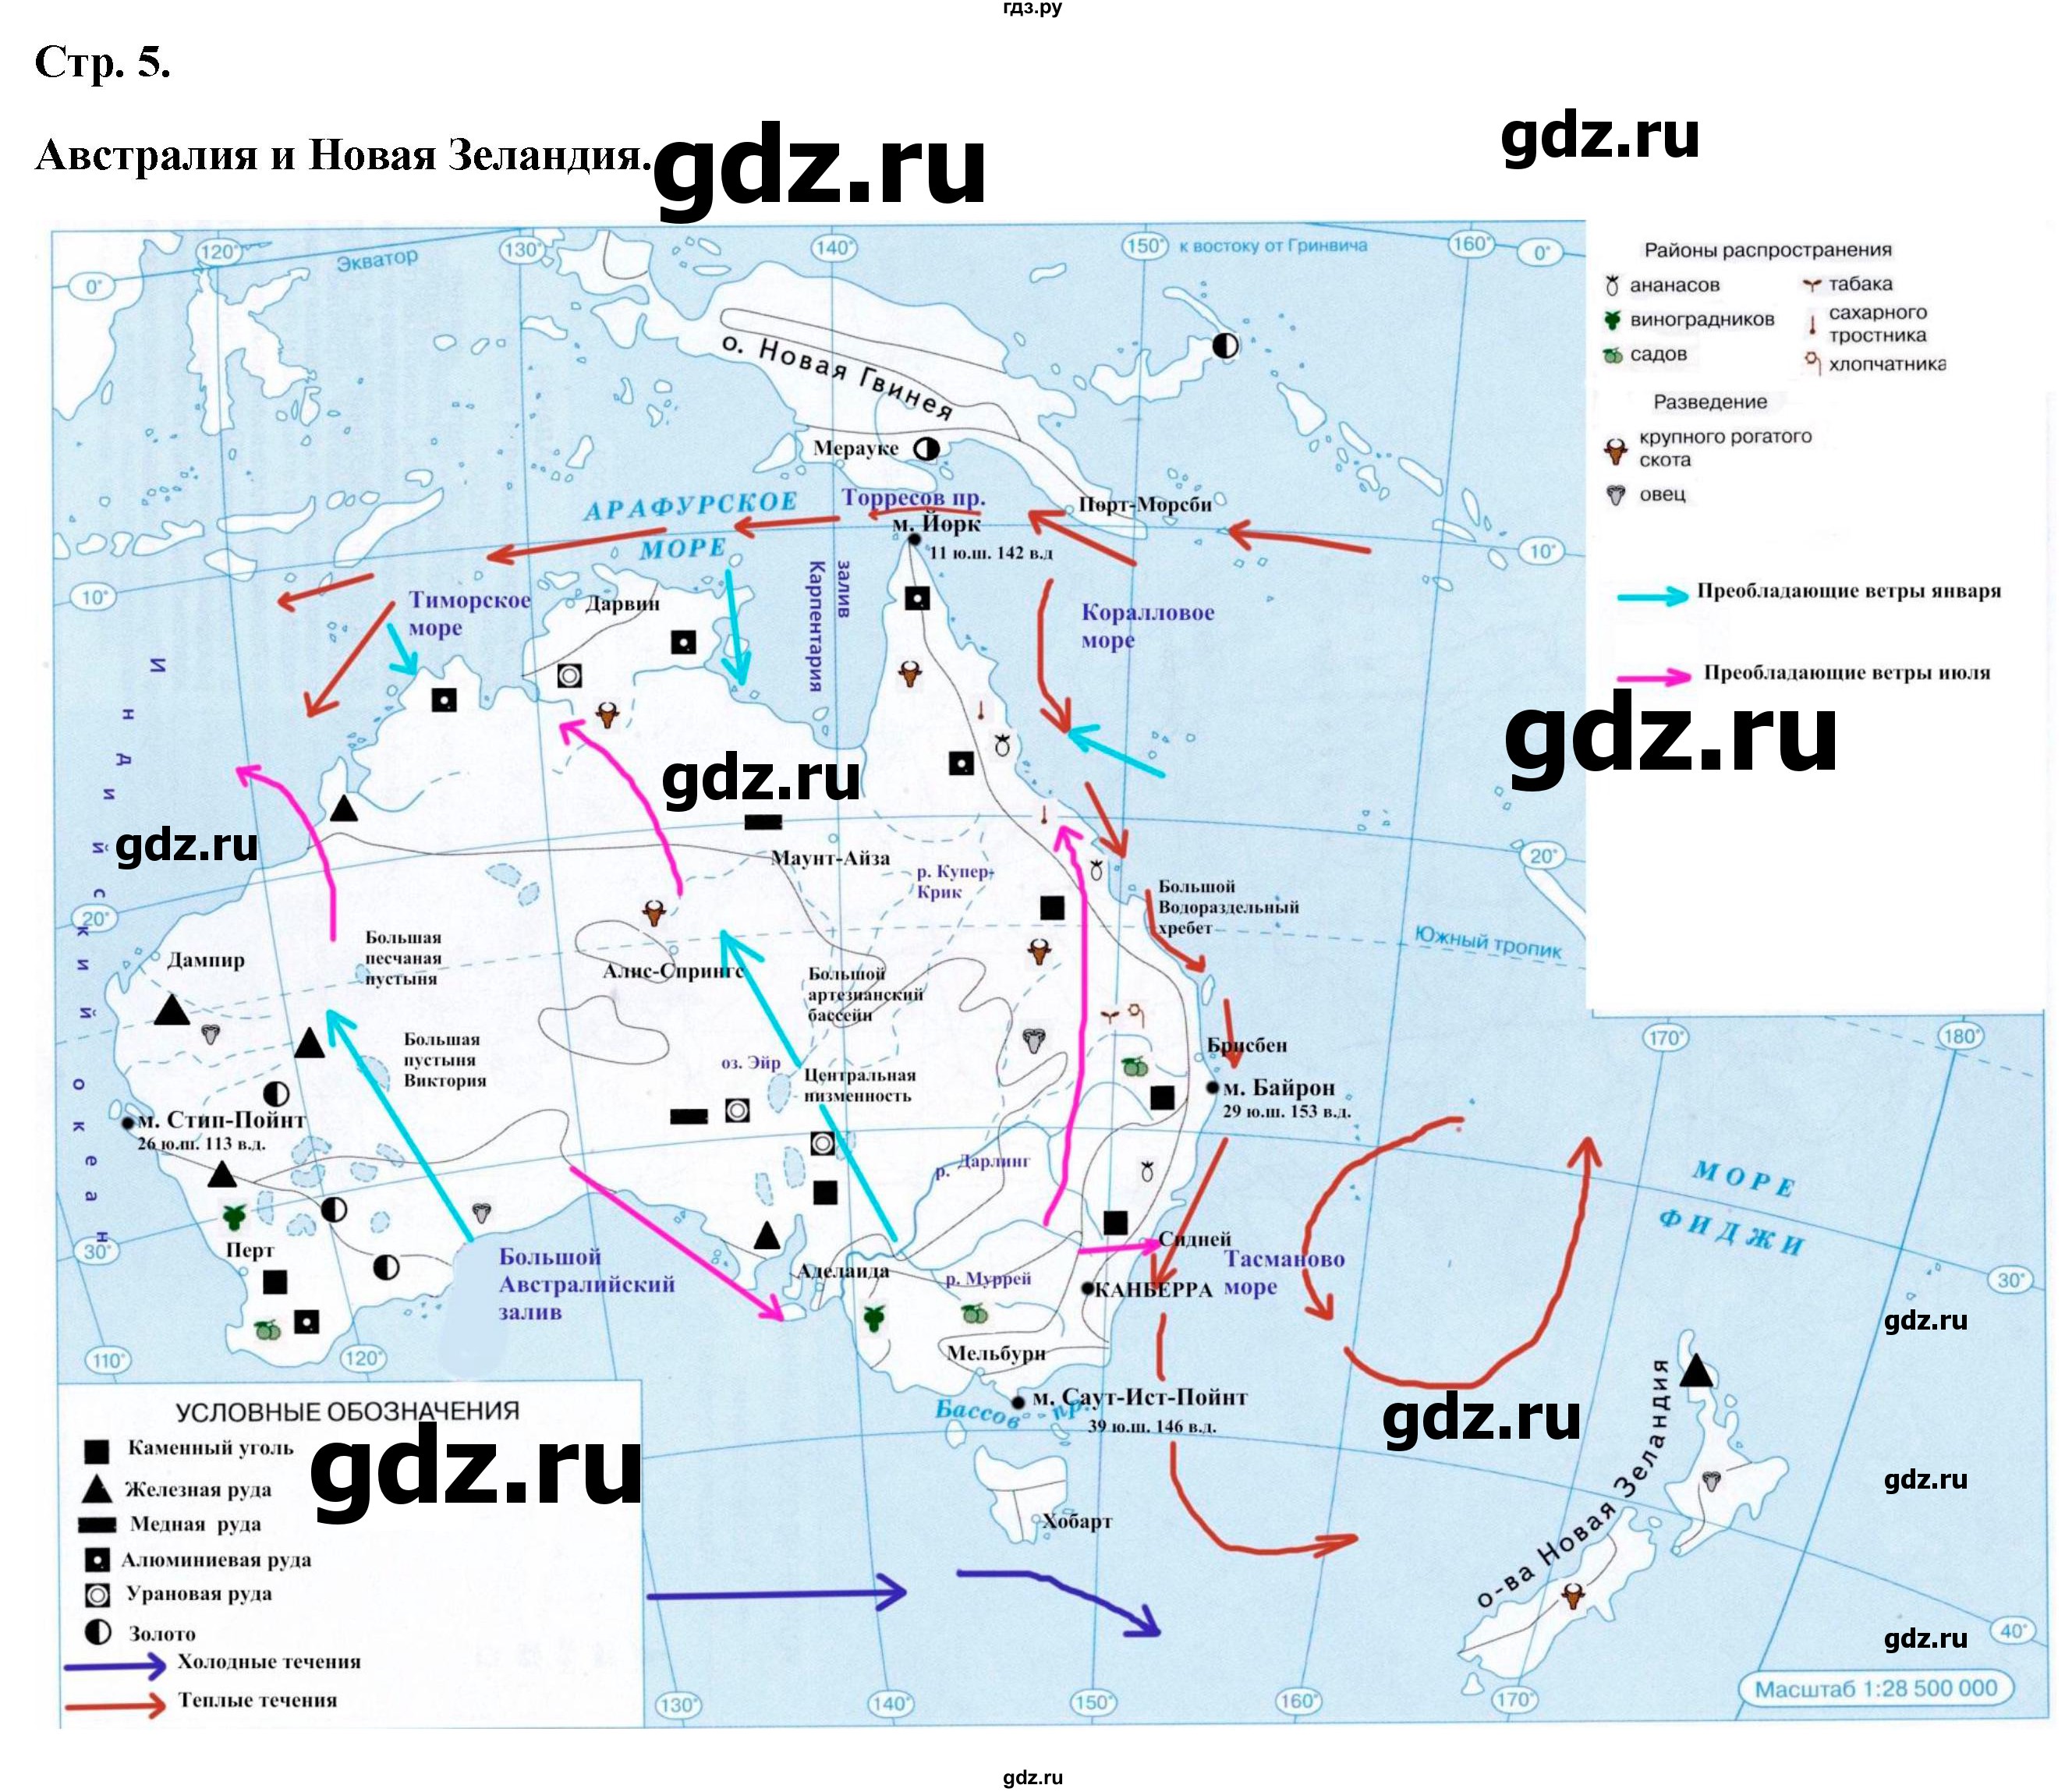 ГДЗ контурные карты стр.5 география 7 класс атлас с контурными картамиКурбский